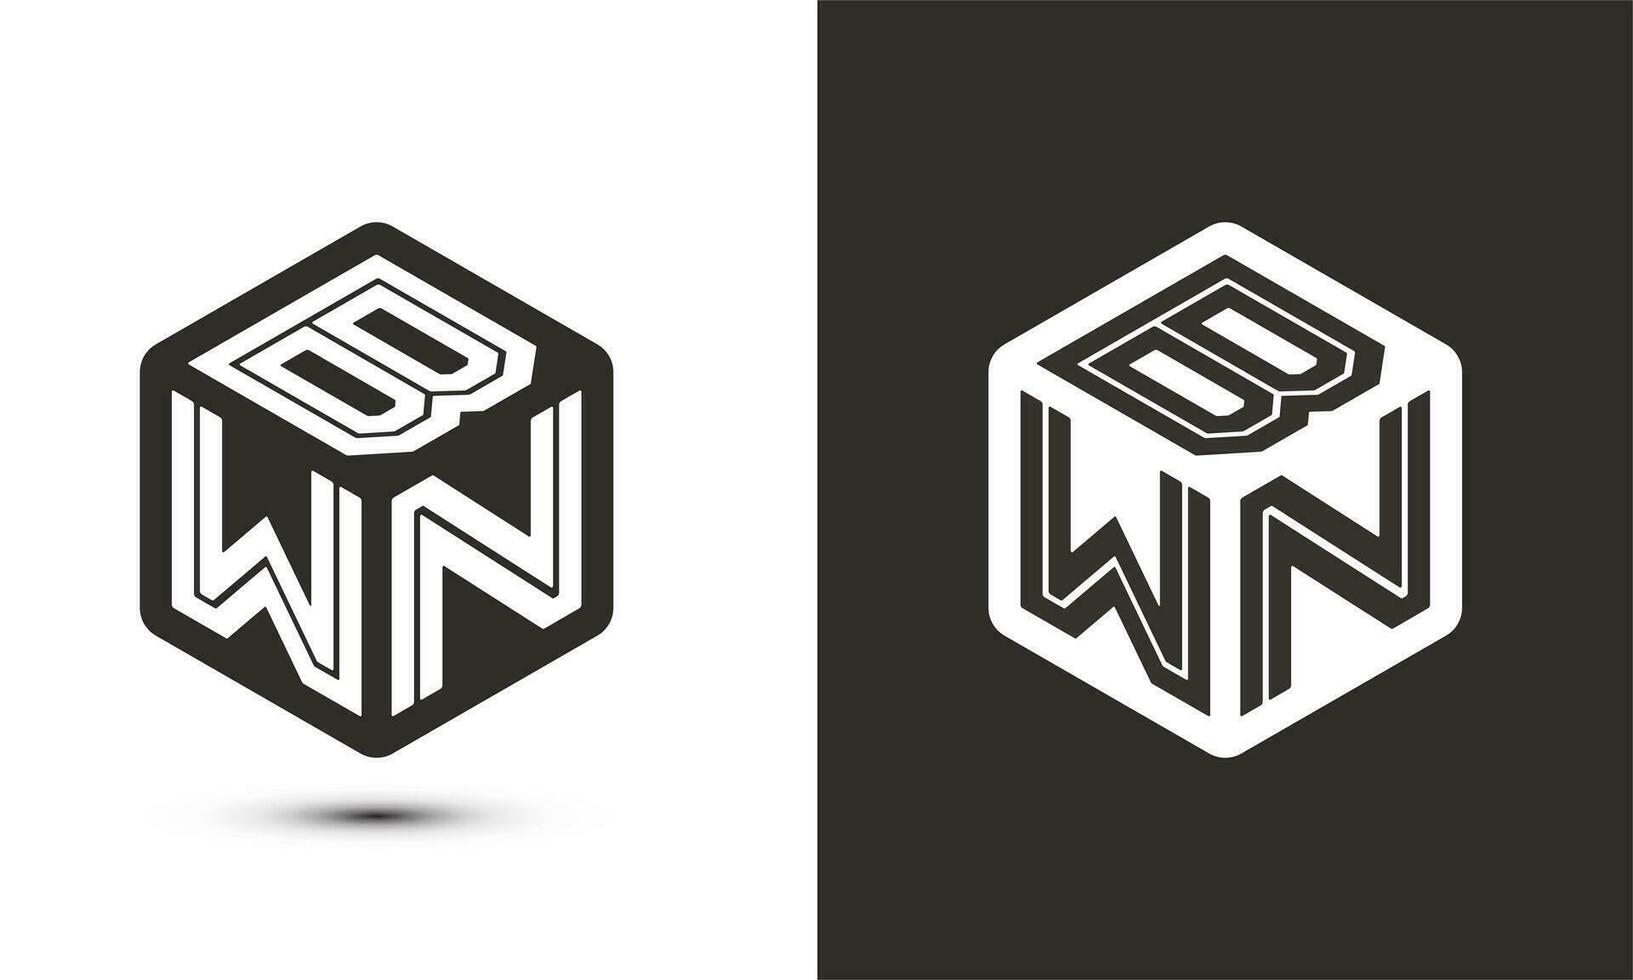 BWN letter logo design with illustrator cube logo, vector logo modern alphabet font overlap style.